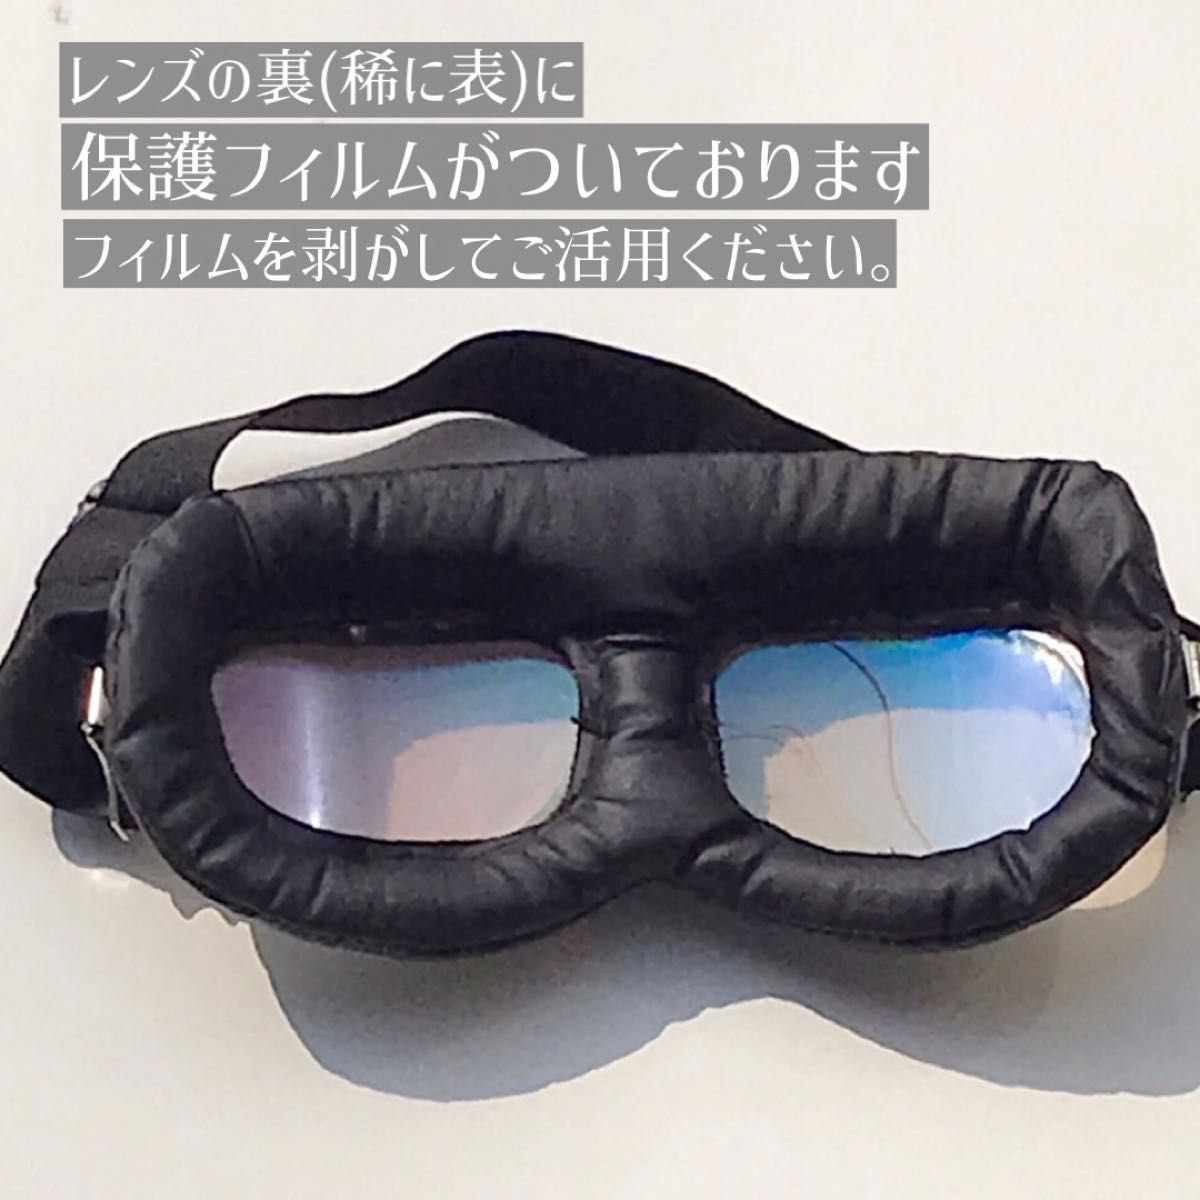 レトロ風ゴーグル 仮装 コスプレ バイクヘルメット 双子コーデ ハロウィン